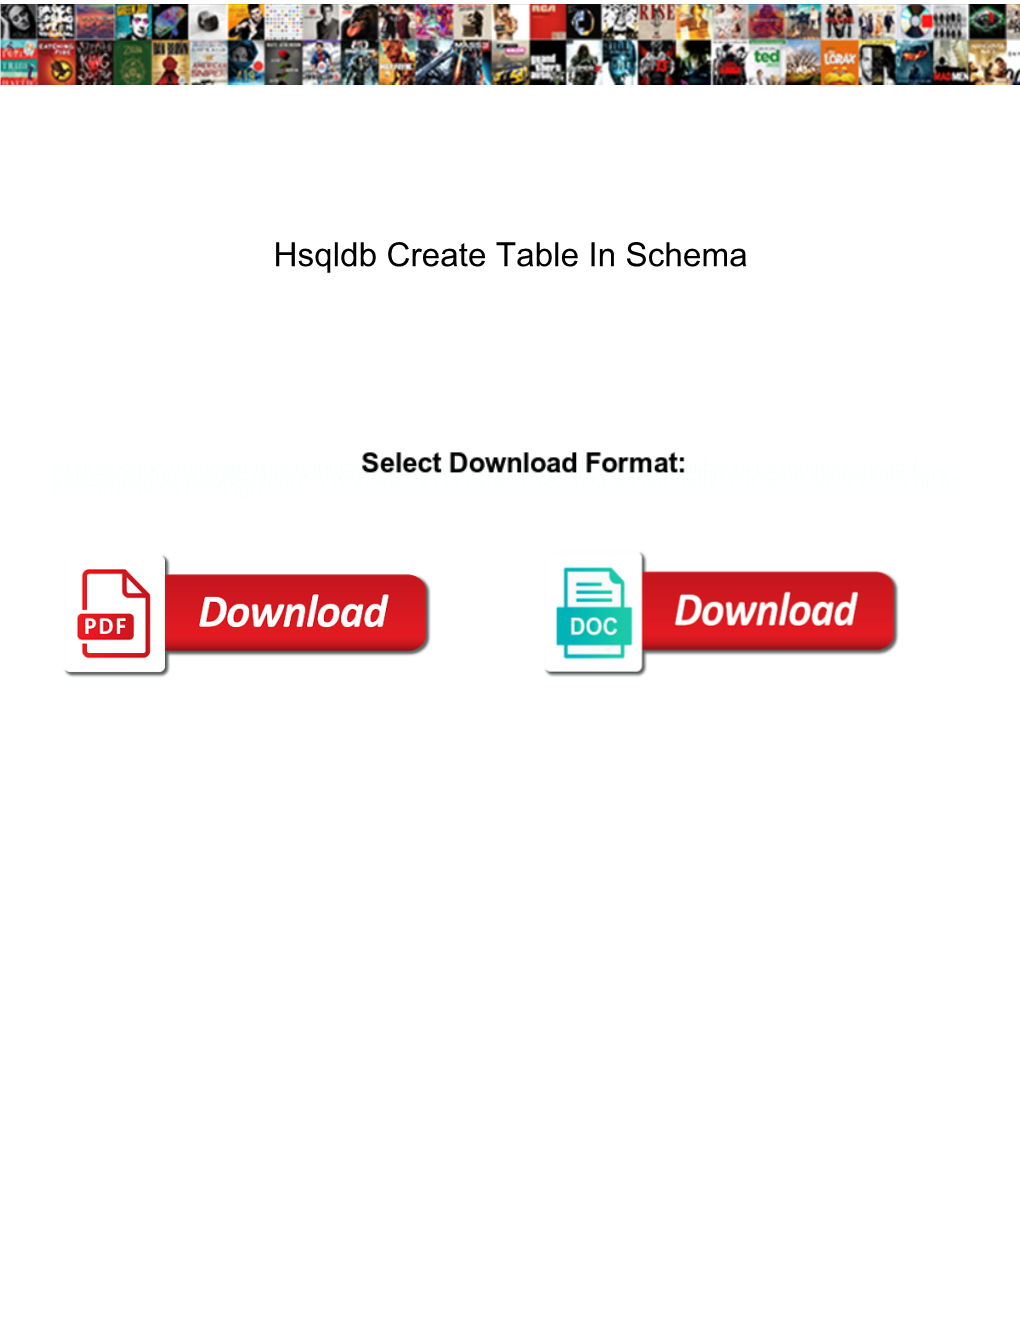 Hsqldb Create Table in Schema